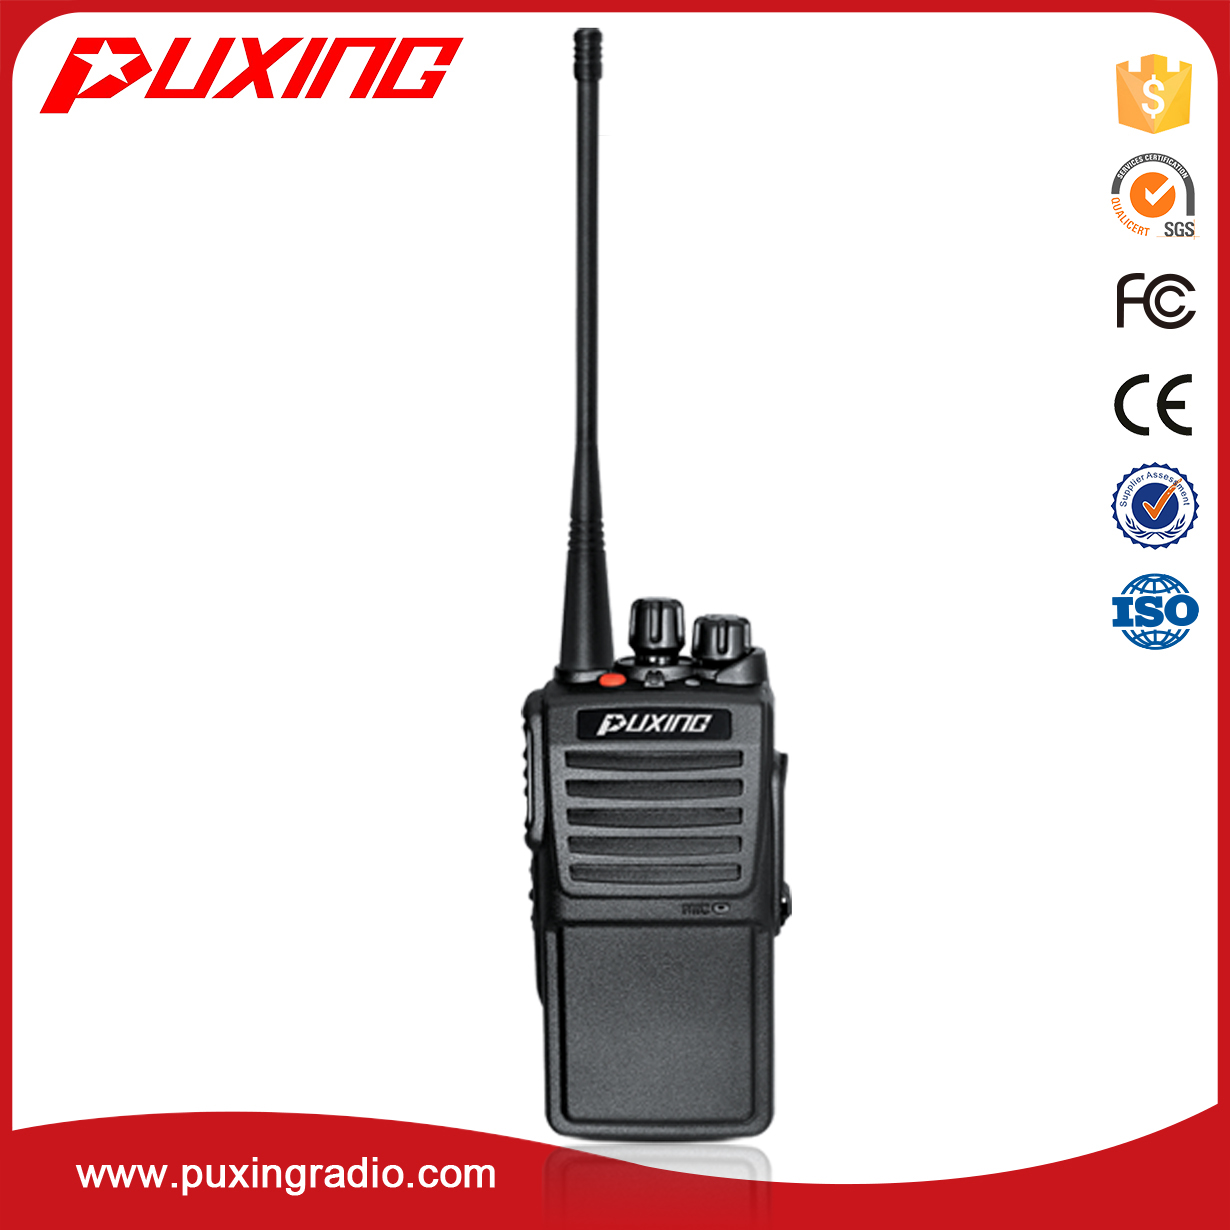 dPMR radio PX-680D